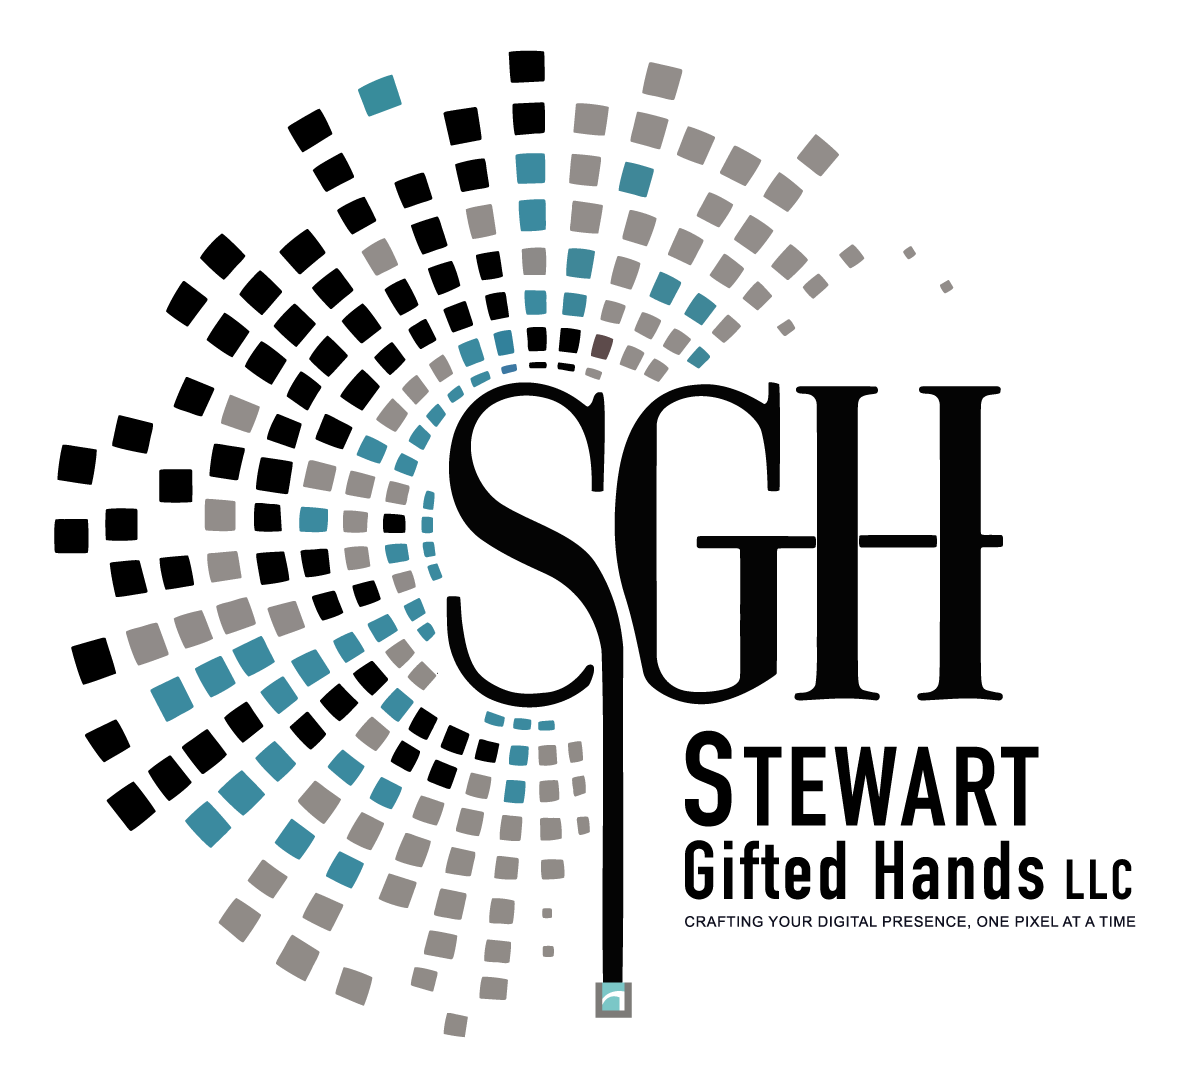 Stewart Gifted Hands